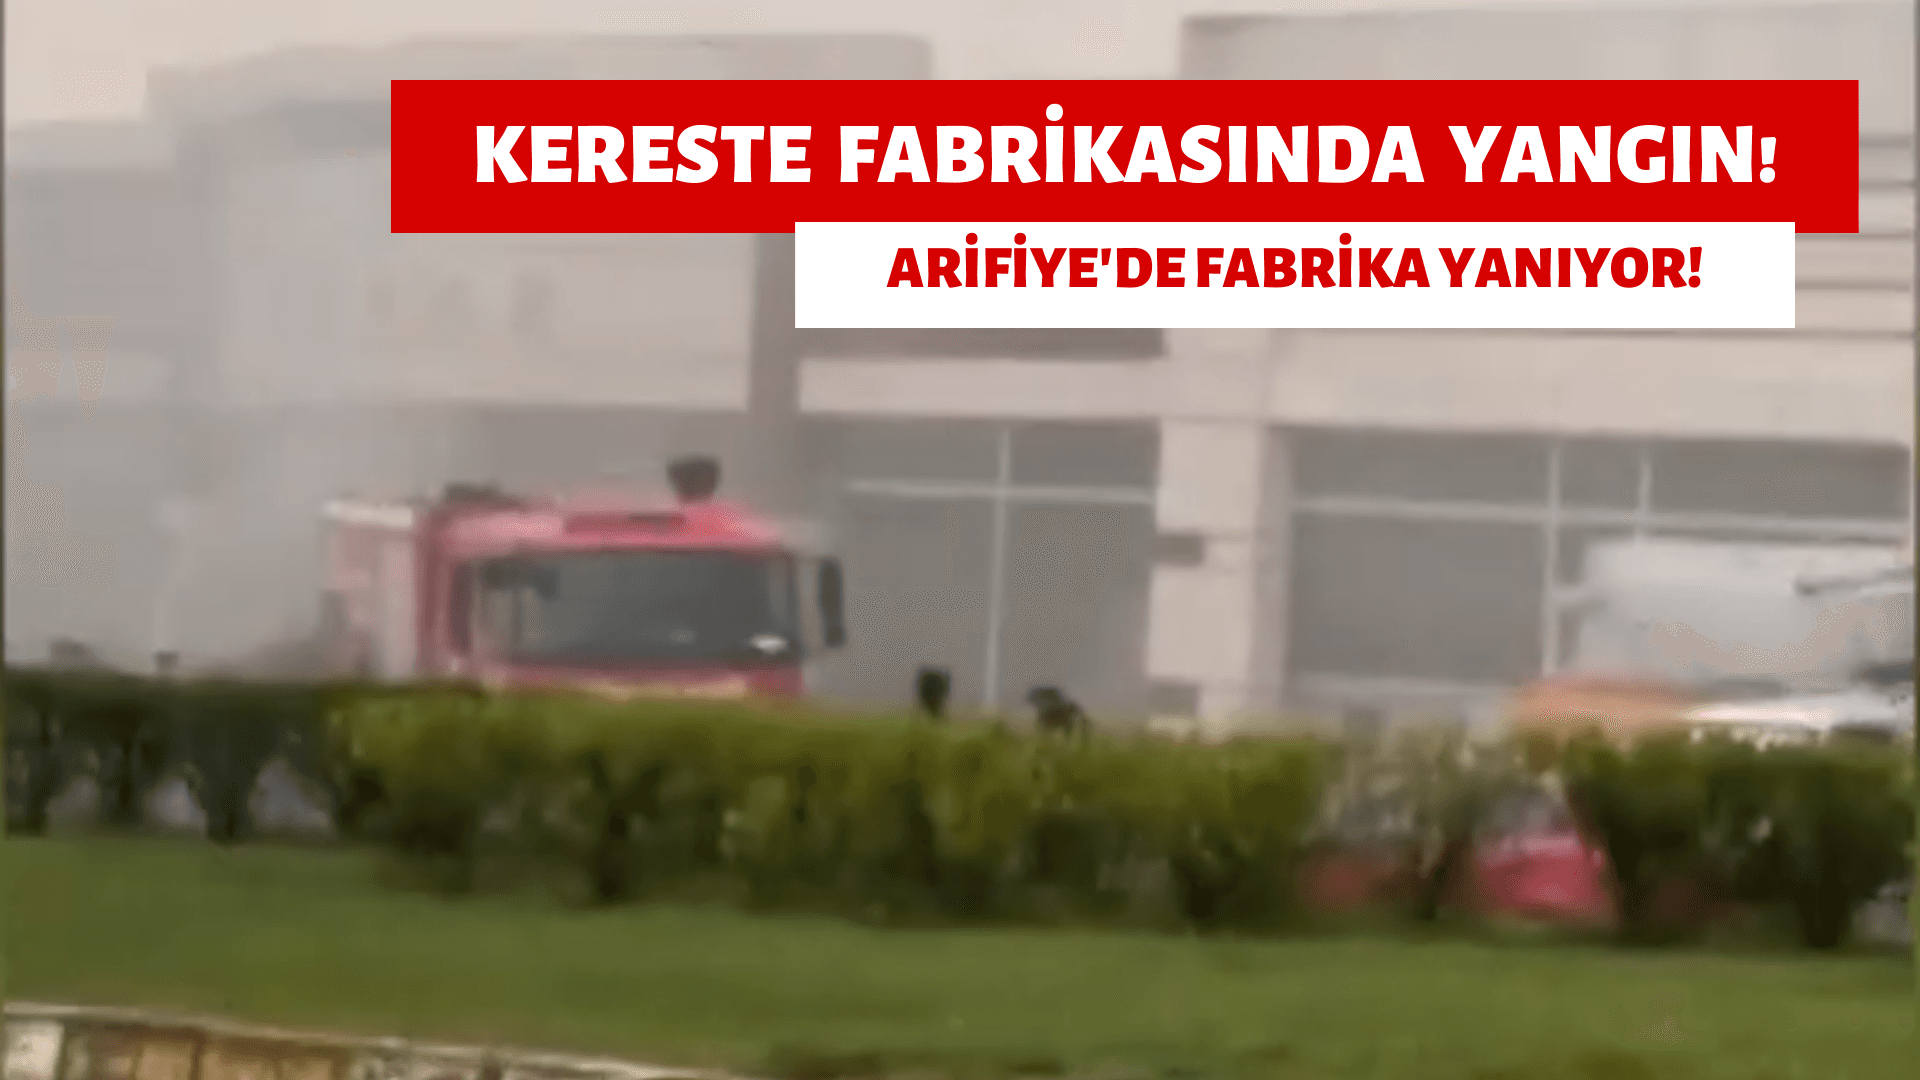 Arifiye'de Yangın, Kereste Fabrikası Yanıyor!